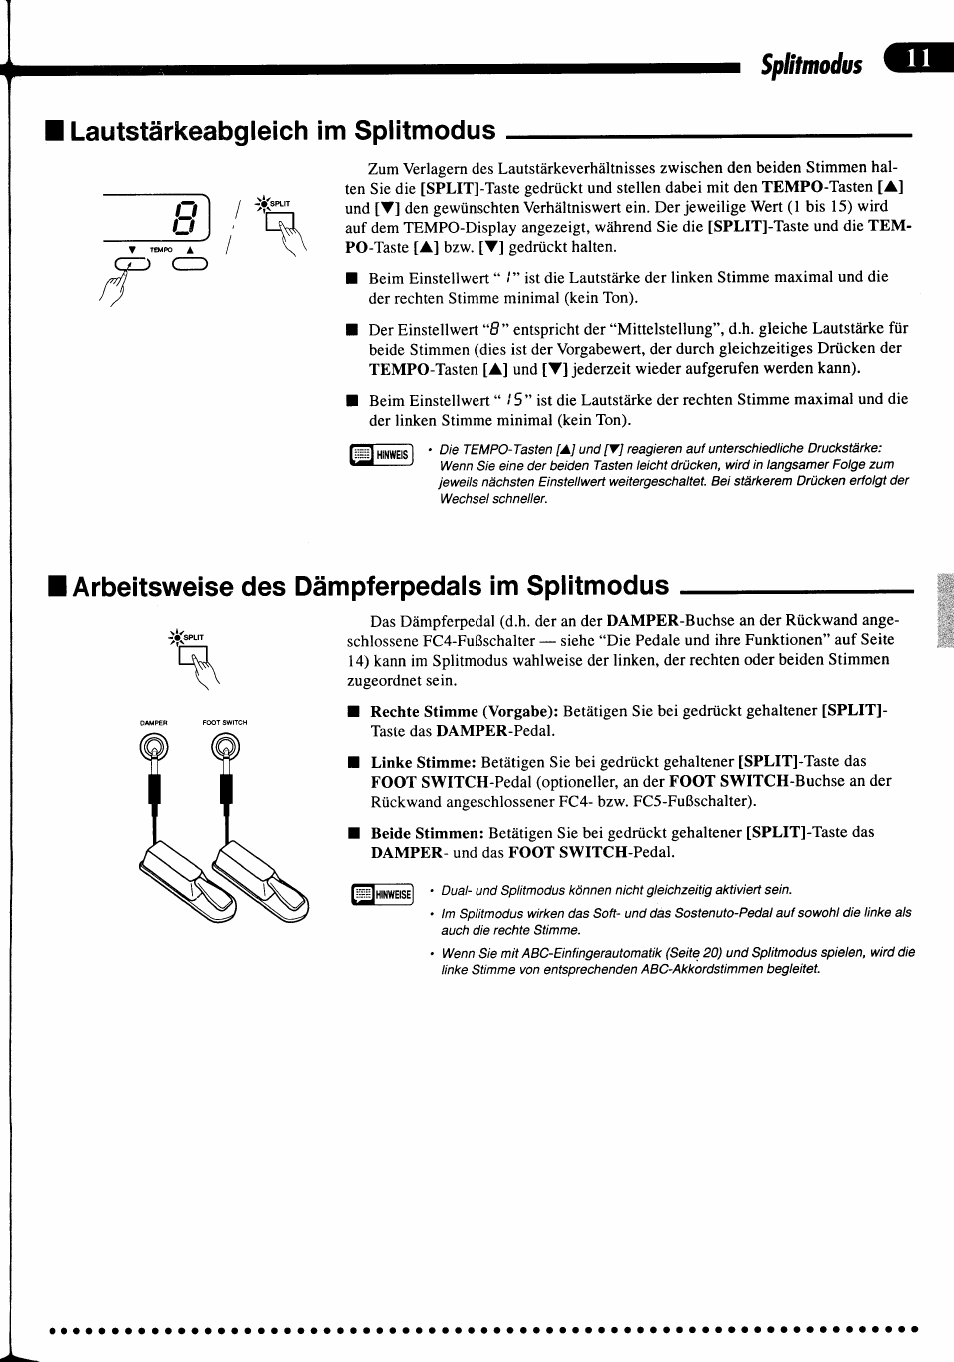 Lautstärkeabgleich im splitmodus, Arbeitsweise des dämpferpedals im splitmodus | Yamaha PDP-400 Benutzerhandbuch | Seite 14 / 25